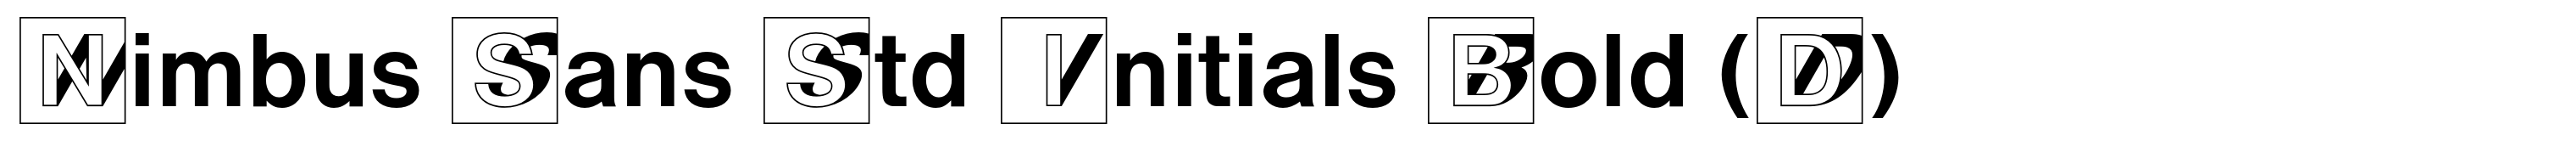 Nimbus Sans Std Initials Bold (D)